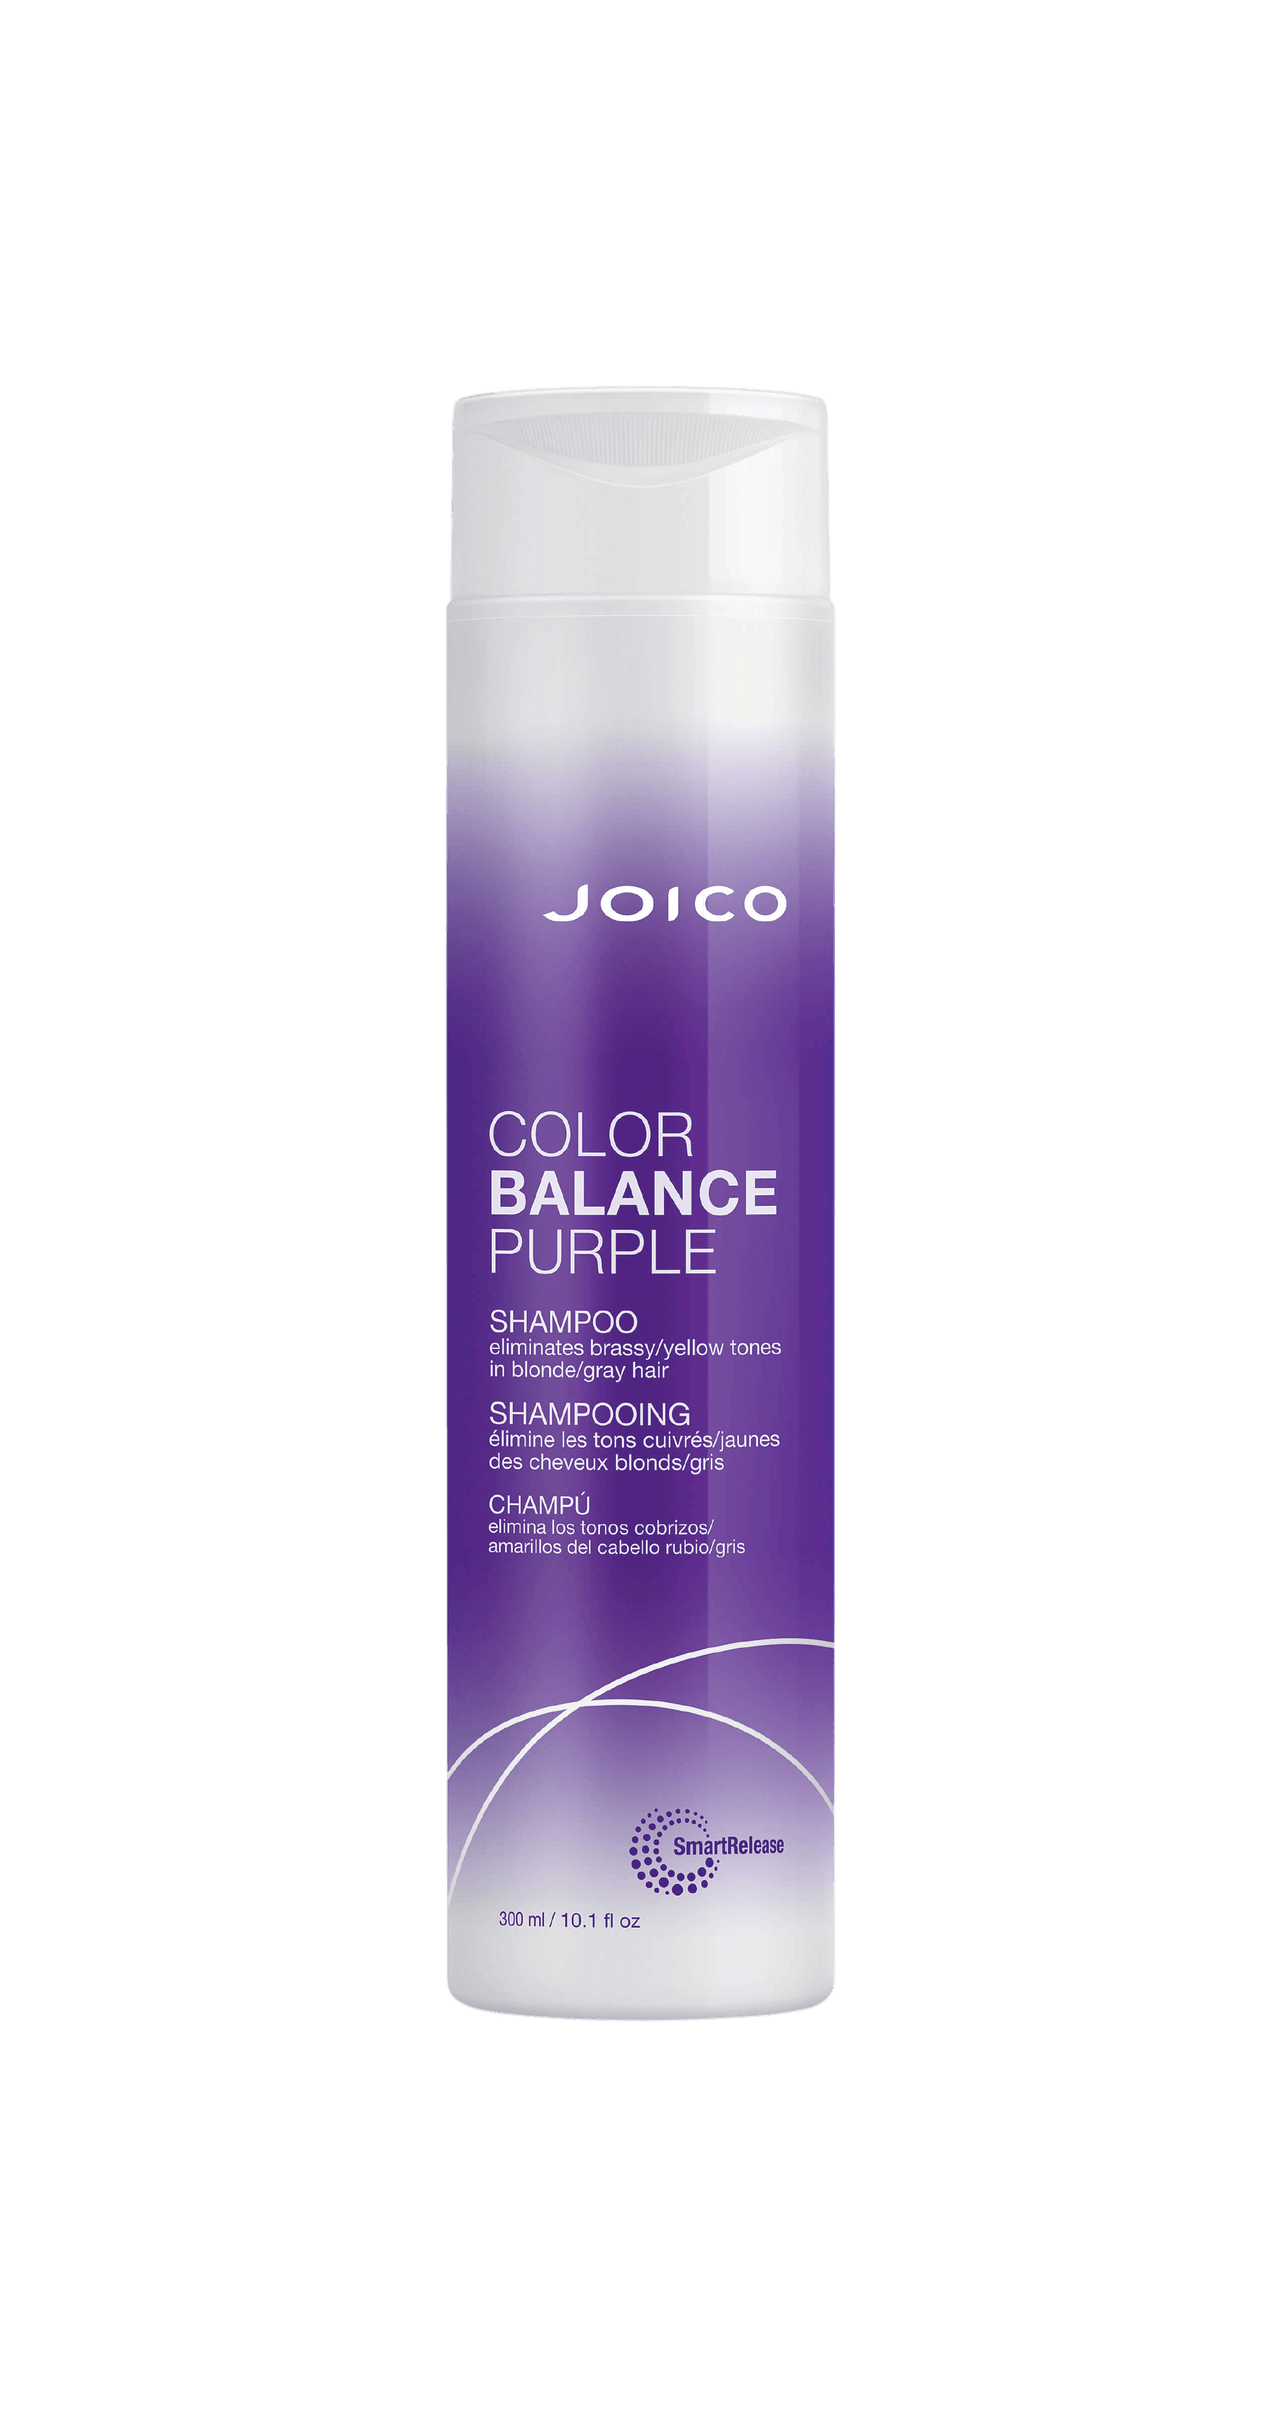 Joico Color Balance Purple Shampoo 300mL Bottle